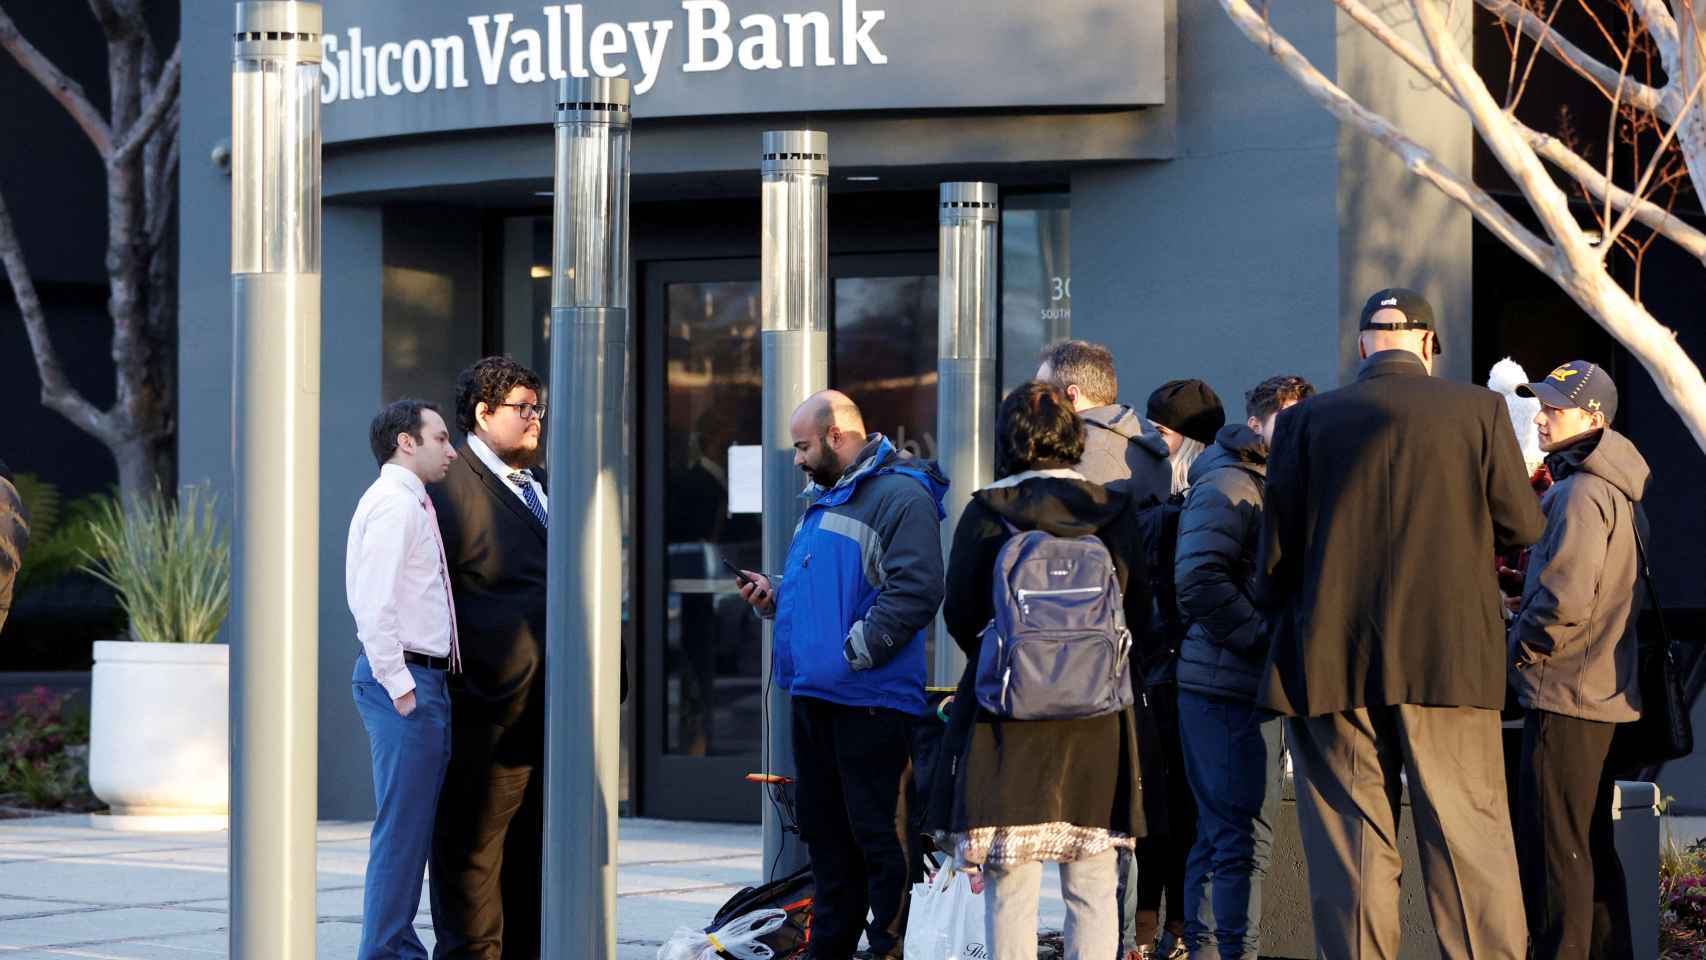 Dos representantes del FDIC habla con varios clientes de Silicon Valley Bank en el exterior de la sede de la entidad en Santa Clara, California (EEUU).